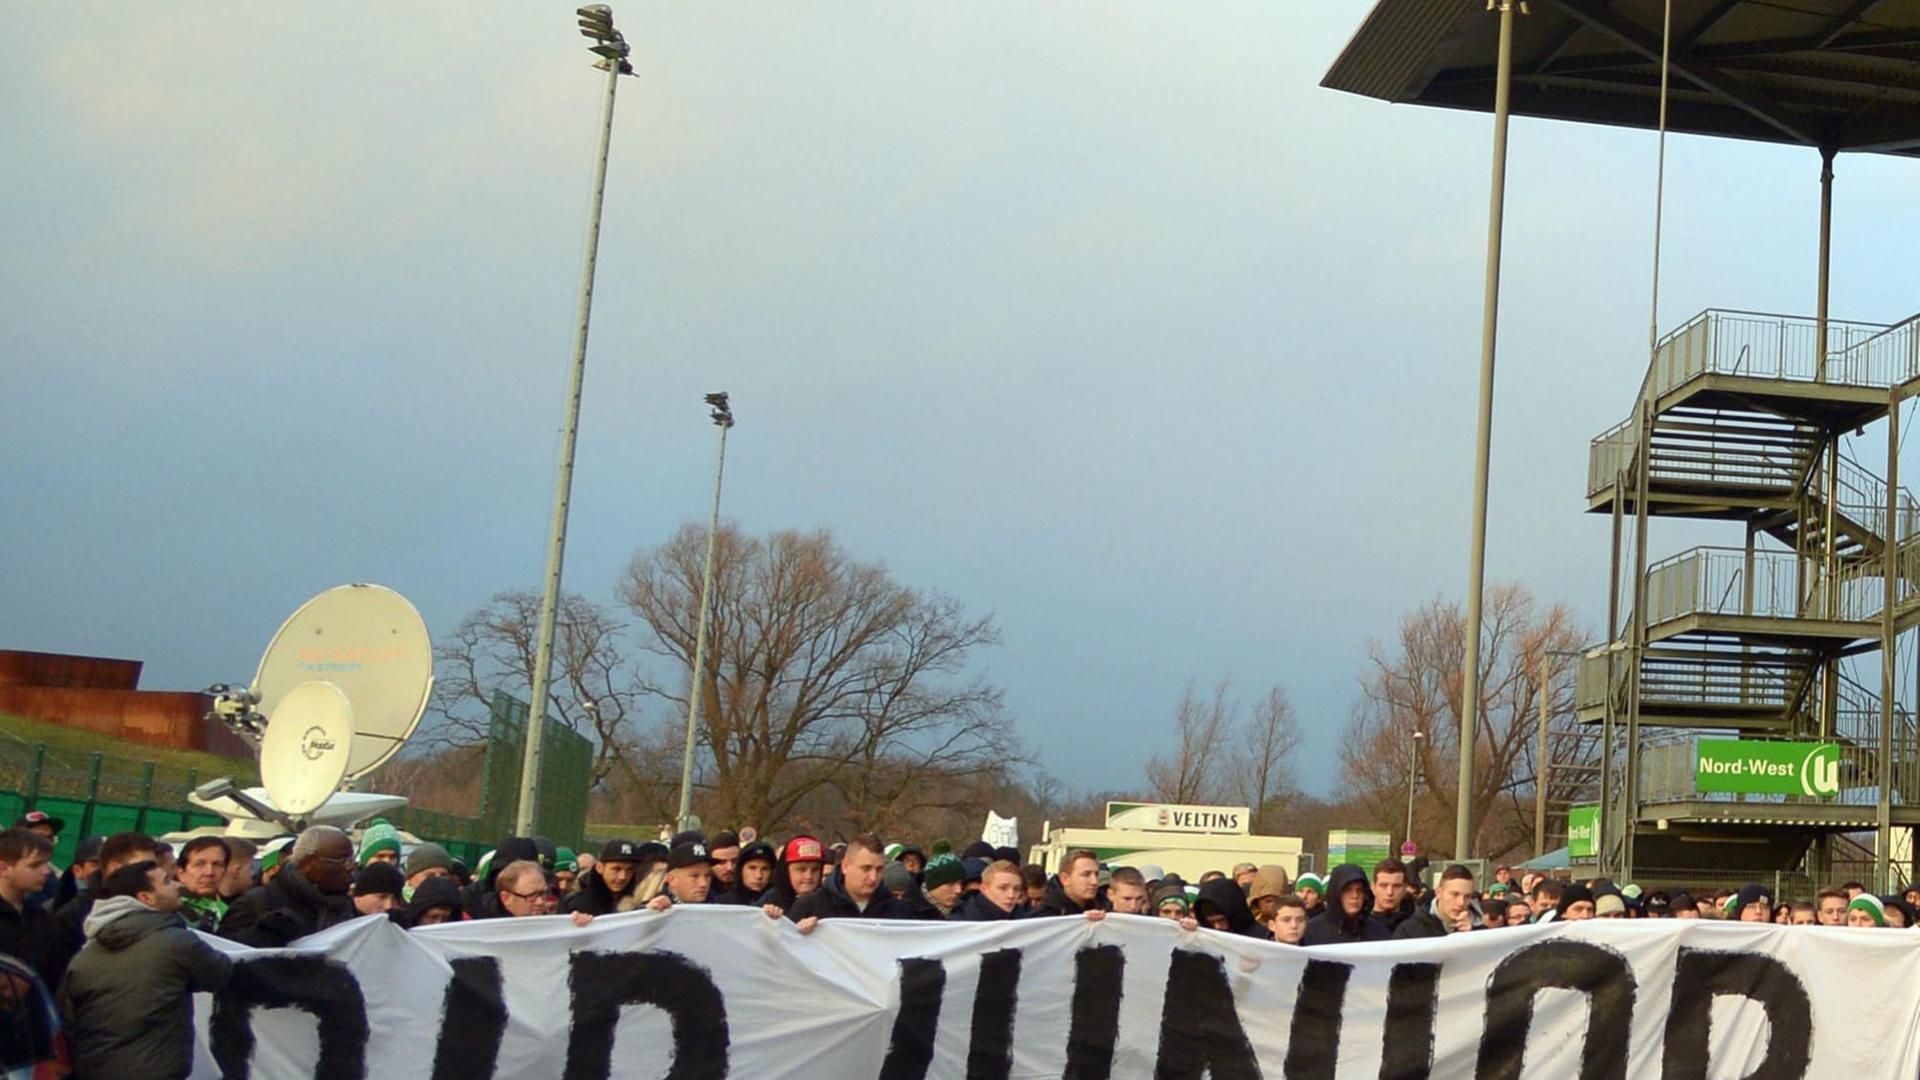 Trauermarsch im Gedenken an den verunglückten Wolfsburger Fußballspieler Junior Malanda am 11.1.2015 vor dem Wolfsburger Stadion.